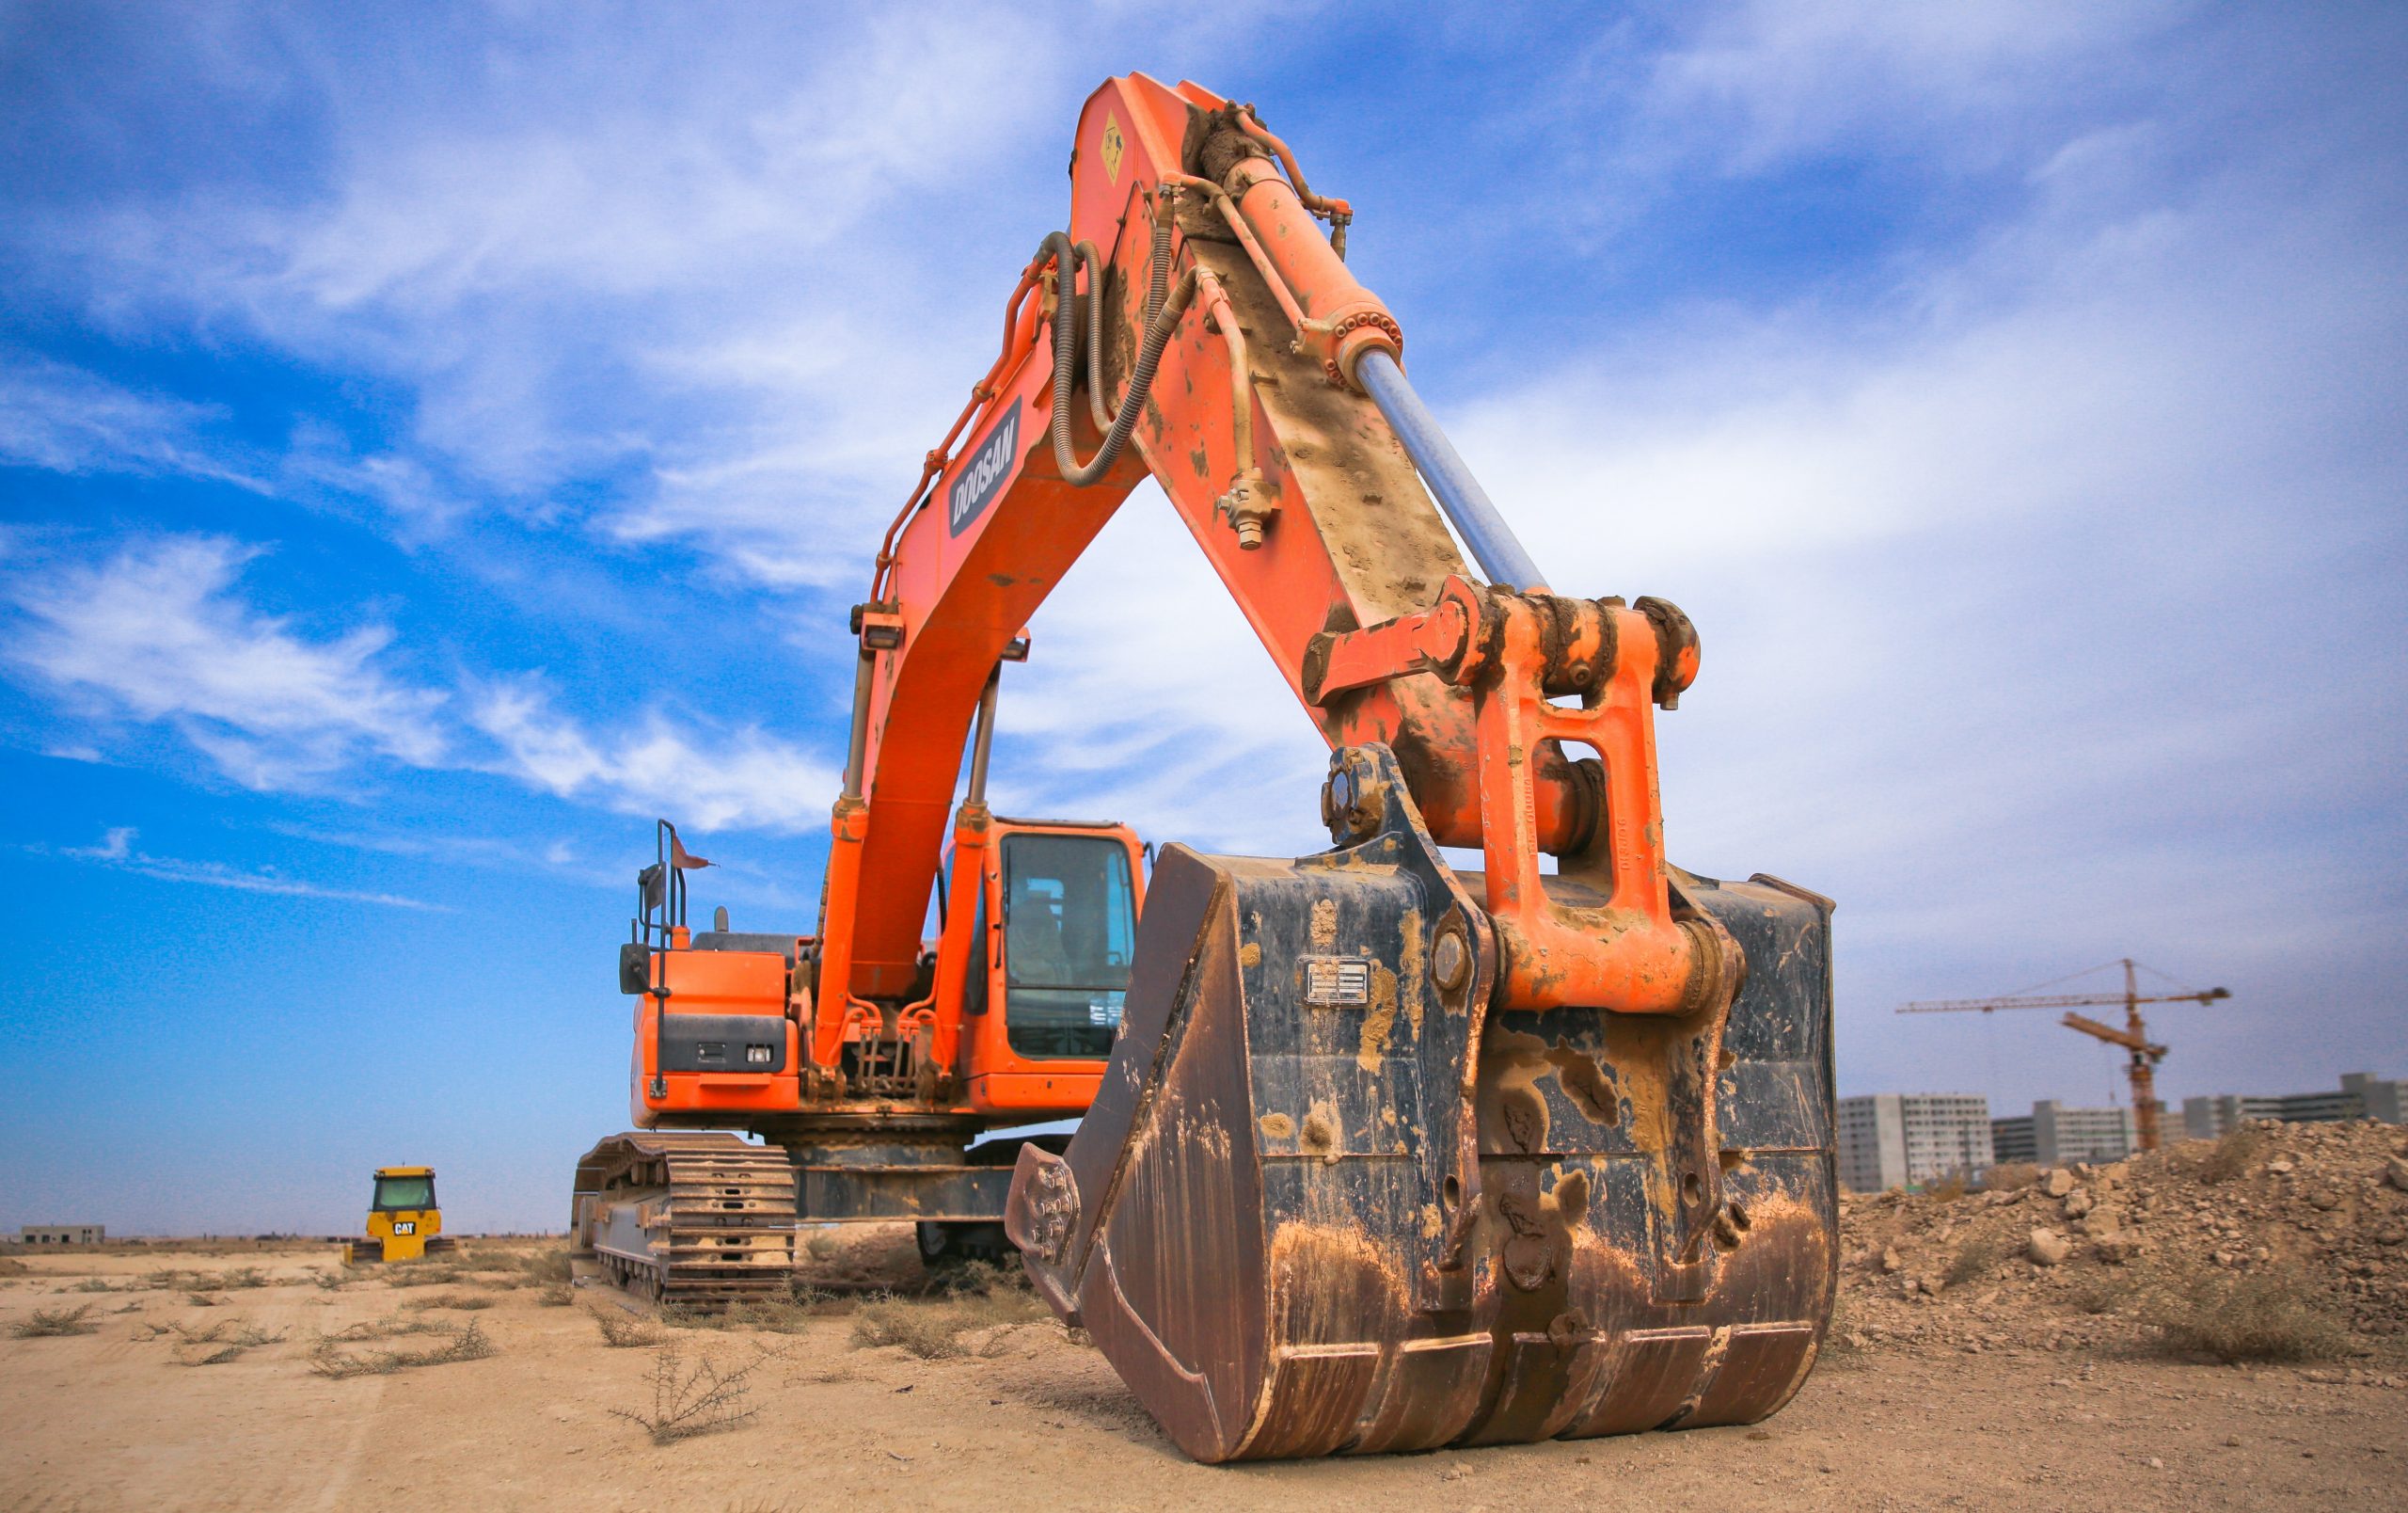 Orange Digger on Dirt - Asset Finance